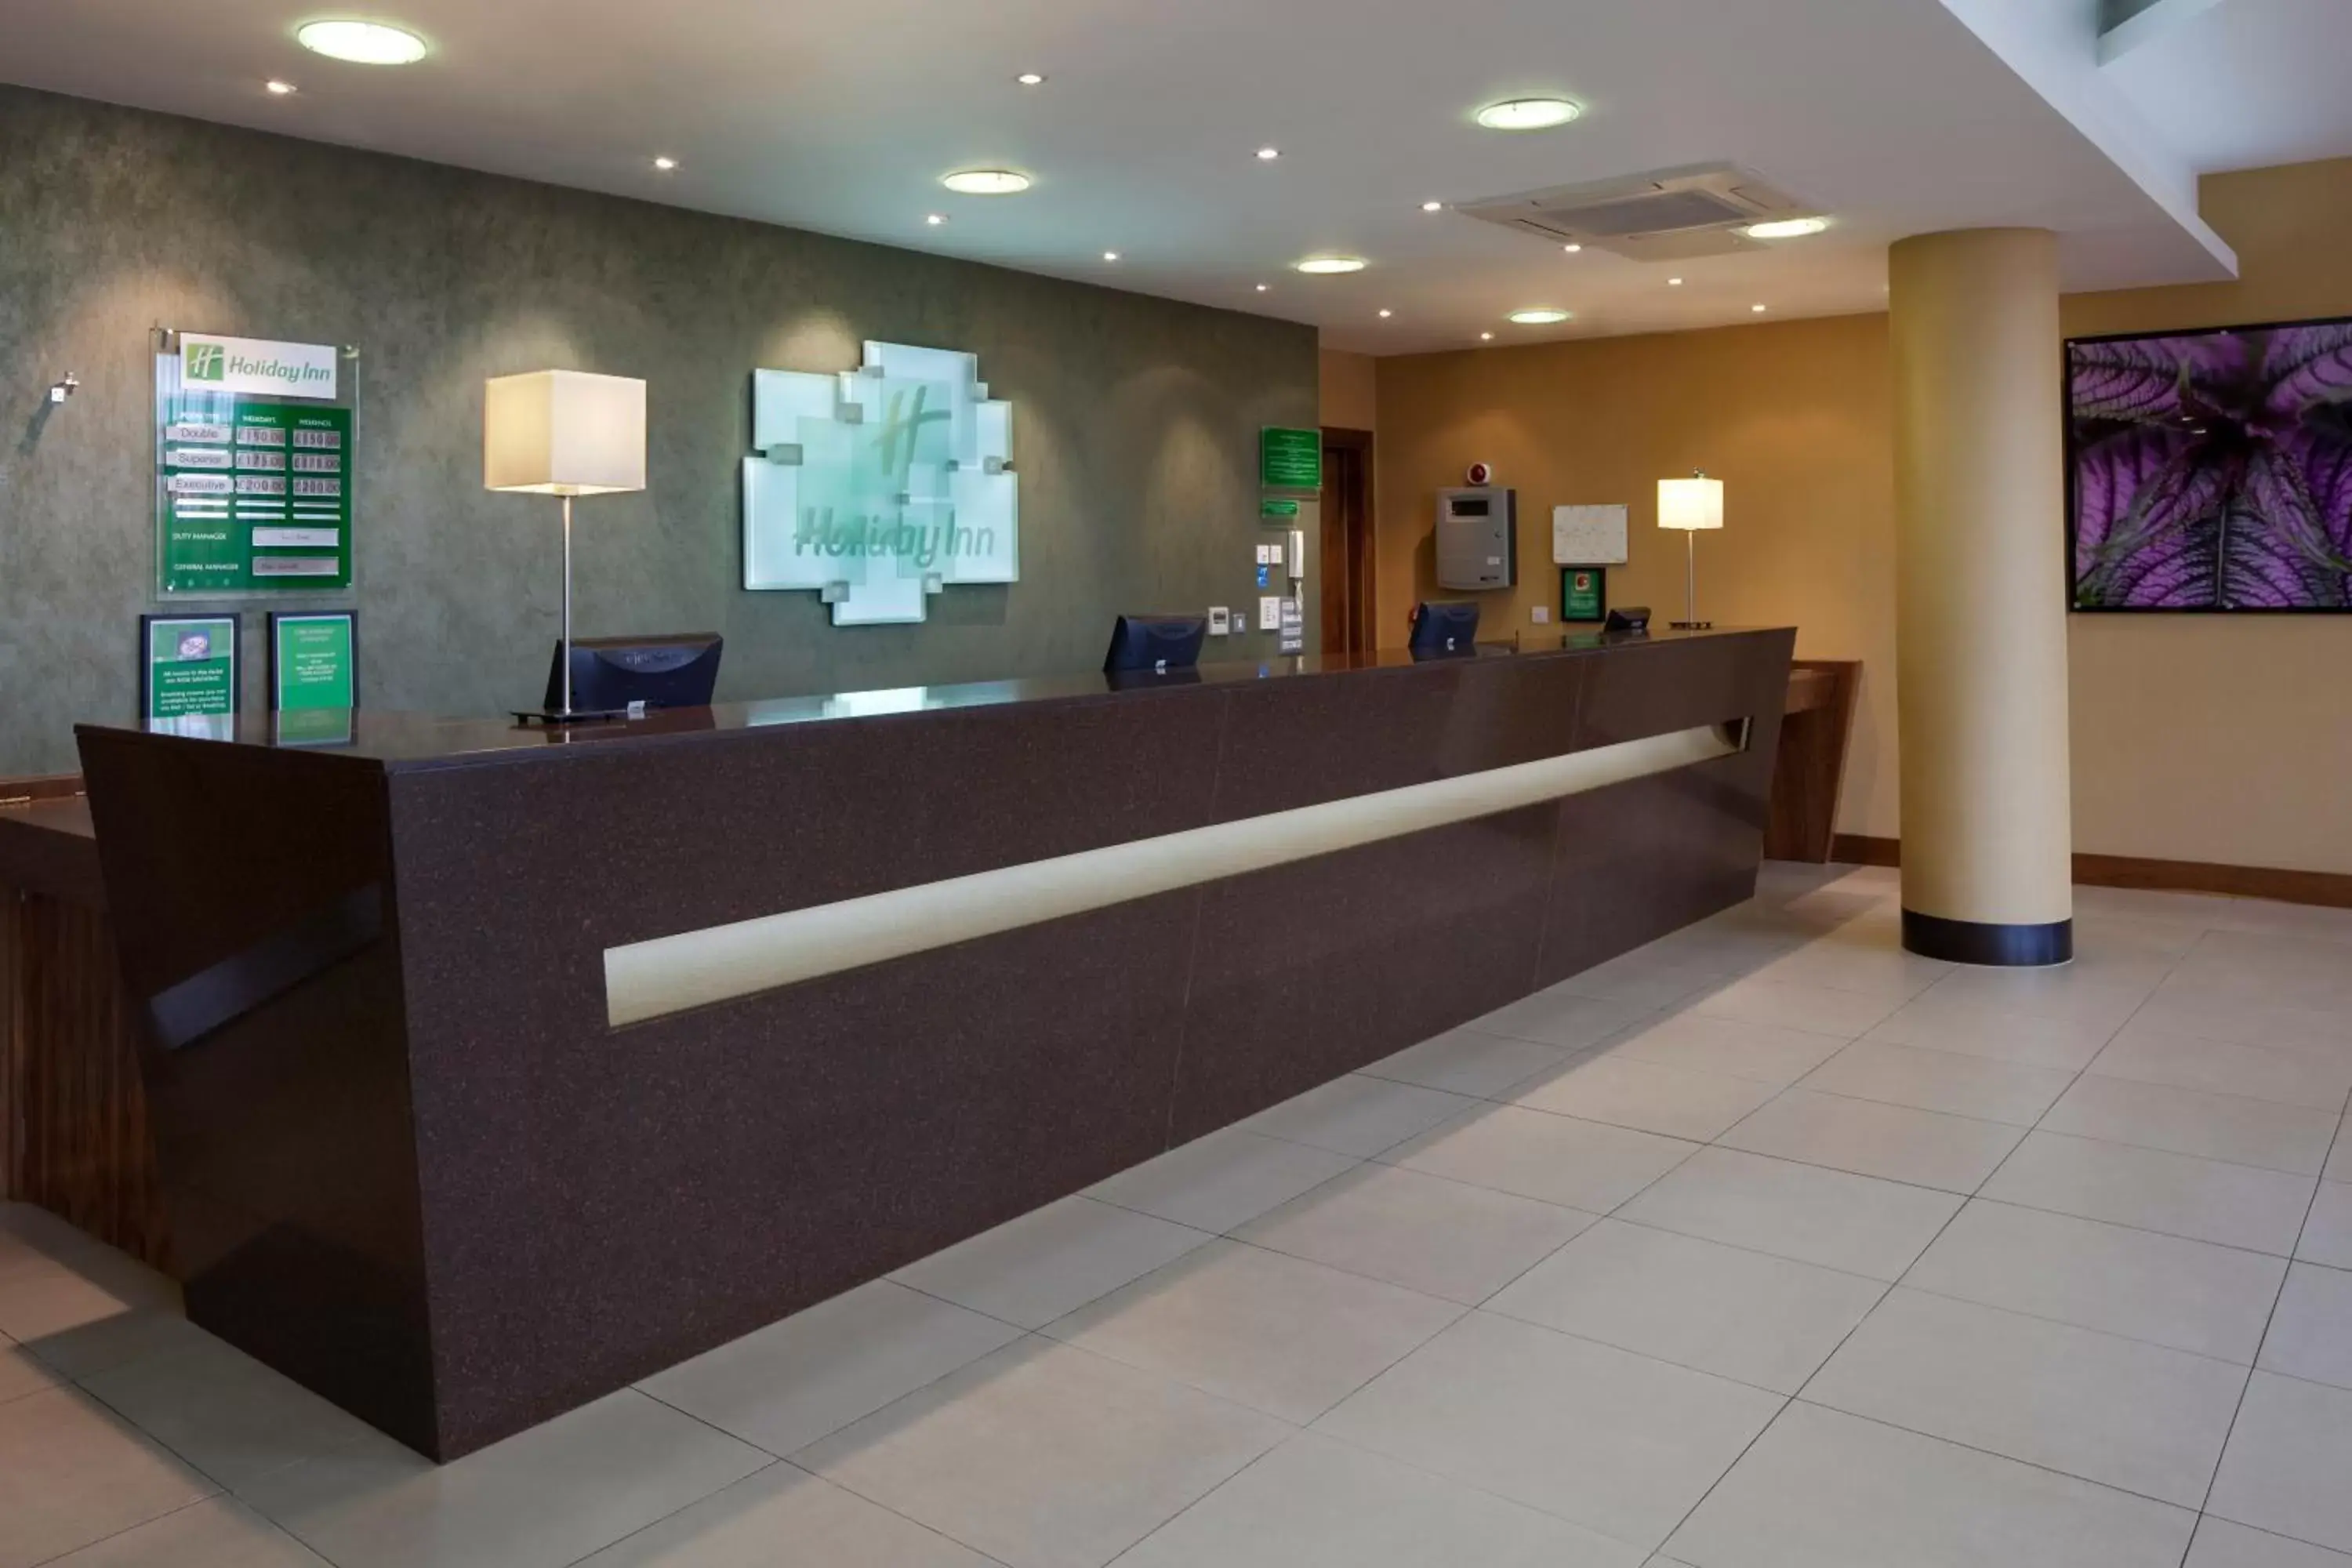 Lobby or reception, Lobby/Reception in Holiday Inn Norwich City, an IHG Hotel